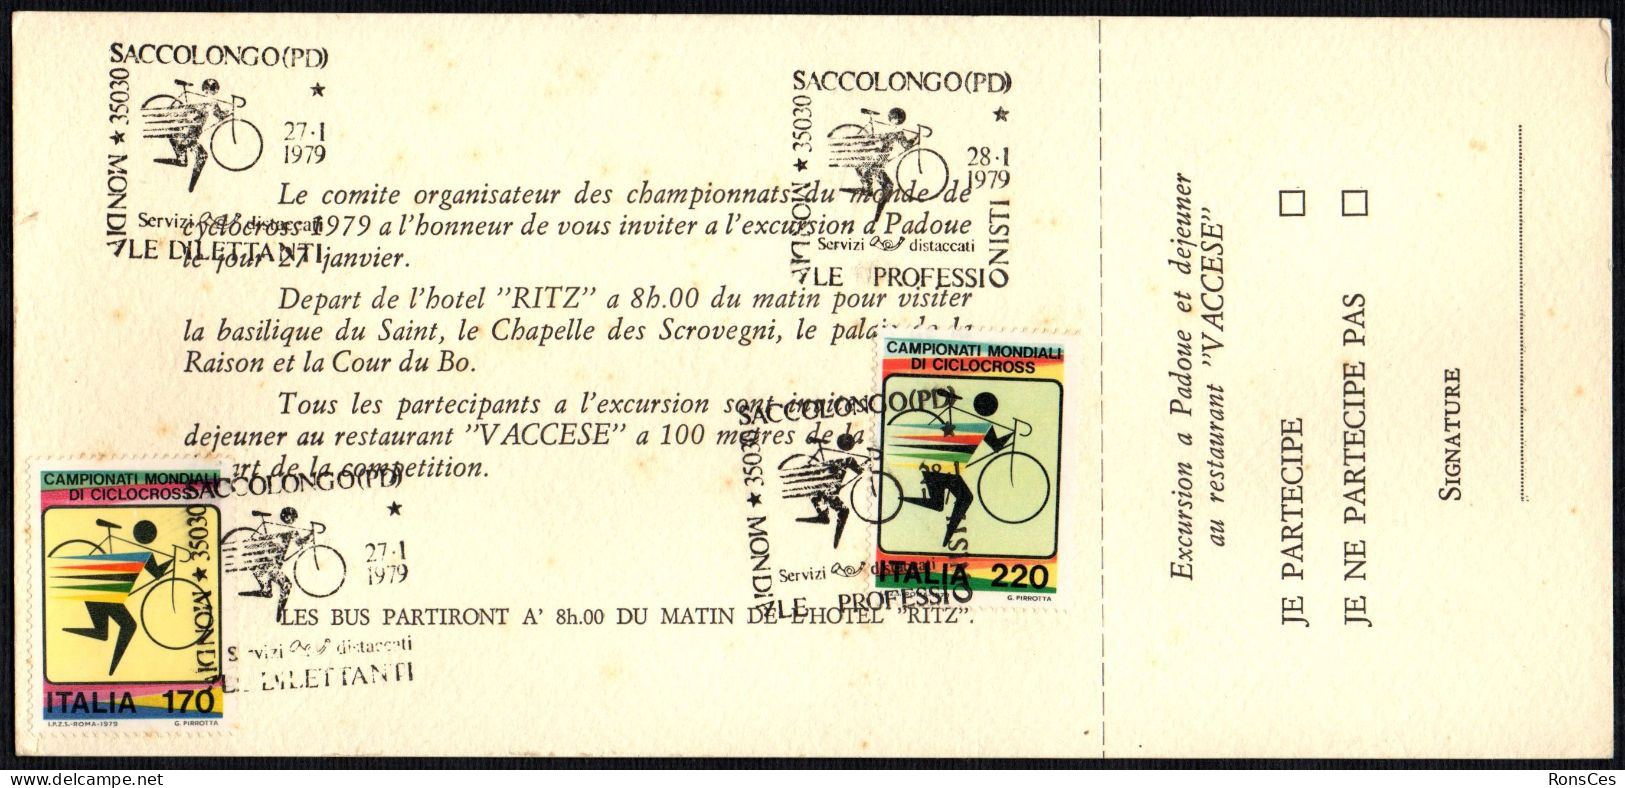 CYCLING - ITALIA SACCOLONGO (PD) 1979 - CAMPIONATO MONDIALE CICLOCROSS - 2 ANNULLI PROFESSIONISTI / DILETTANTI - A - Ciclismo